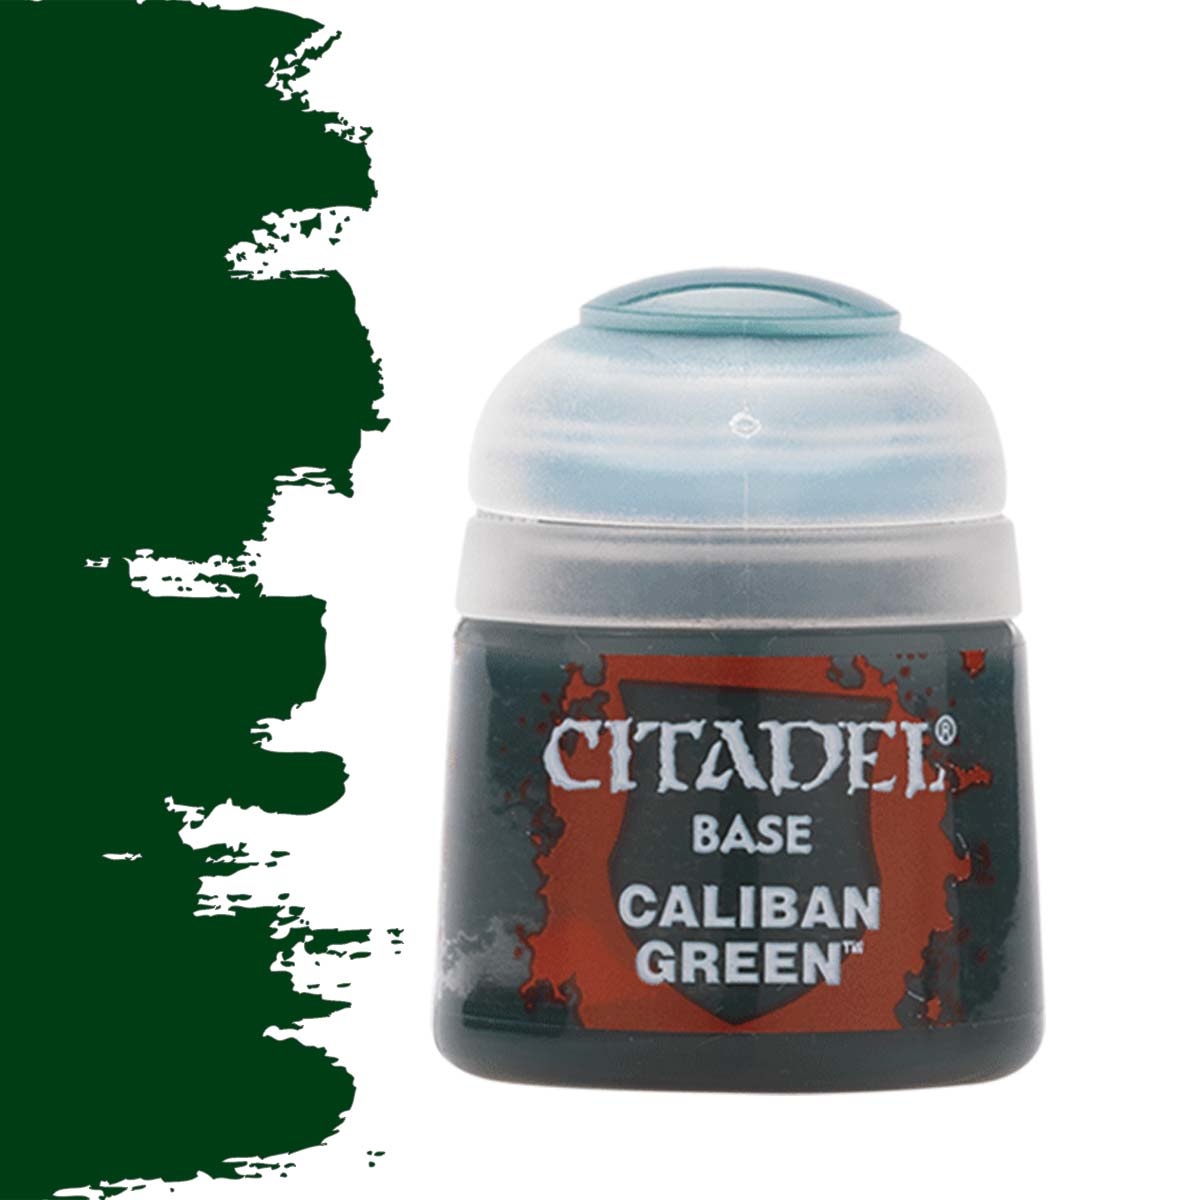 Citadel Citadel Paints: Base - Caliban Green